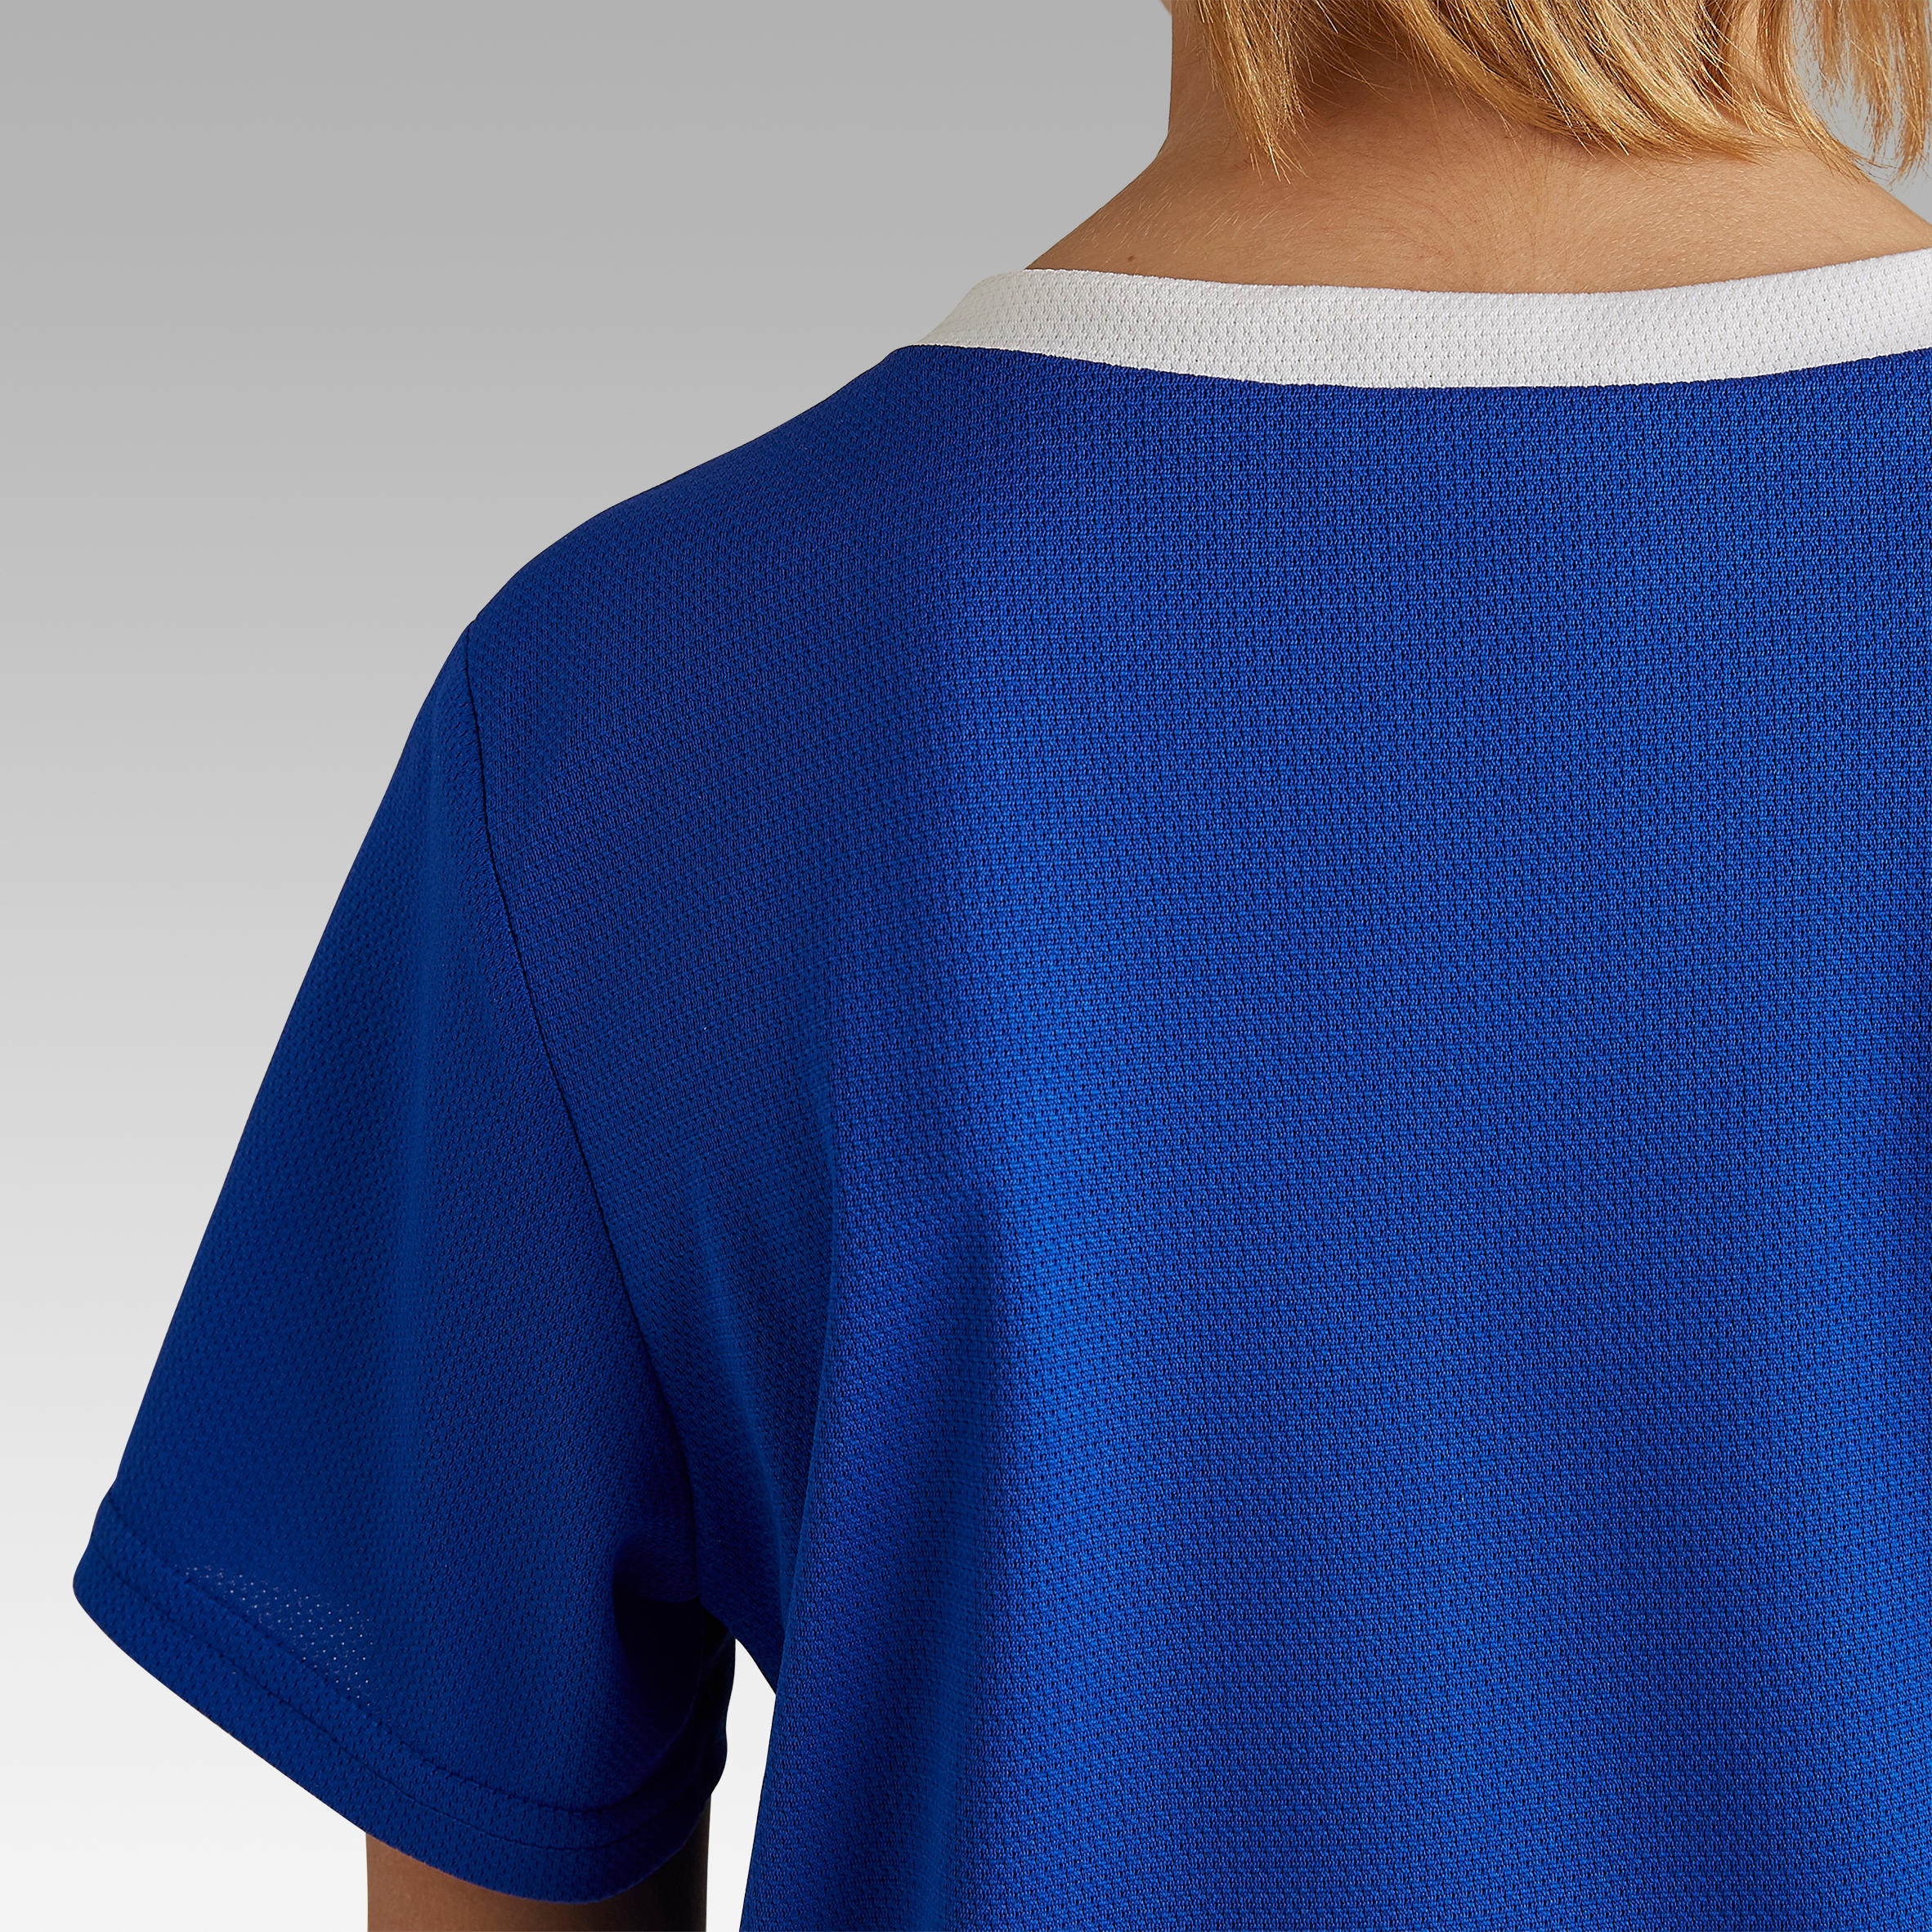 Kids' Football Shirt Essential - Blue 7/8